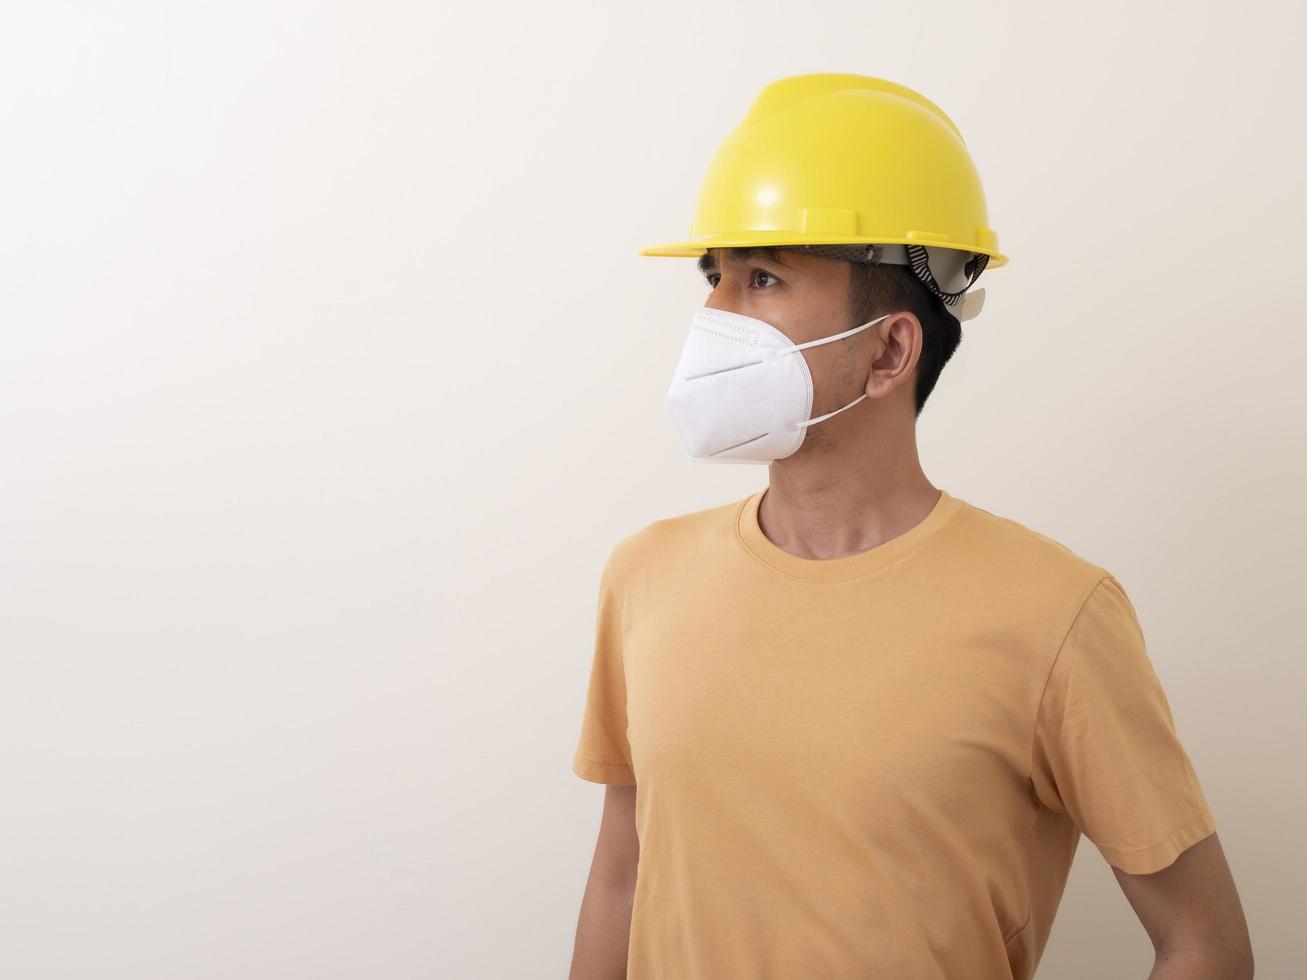 los trabajadores industriales asiáticos usan cascos amarillos, usan máscaras protectoras para su salud foto